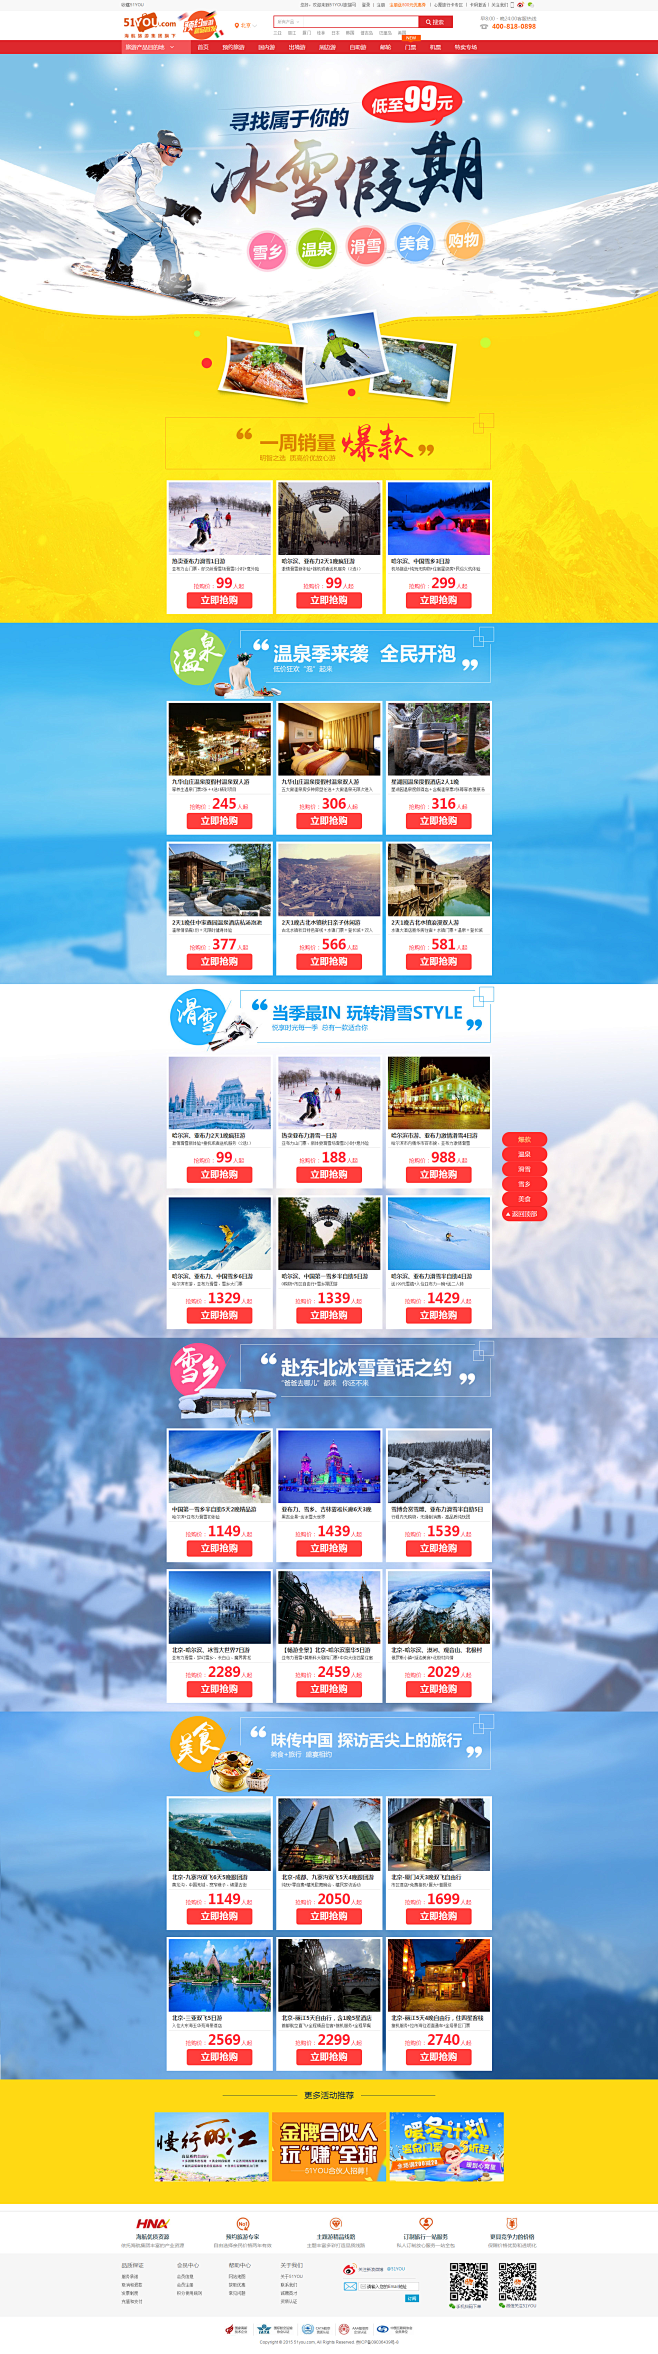 【冰雪假期】雪乡,温泉,滑雪,没事,购物...